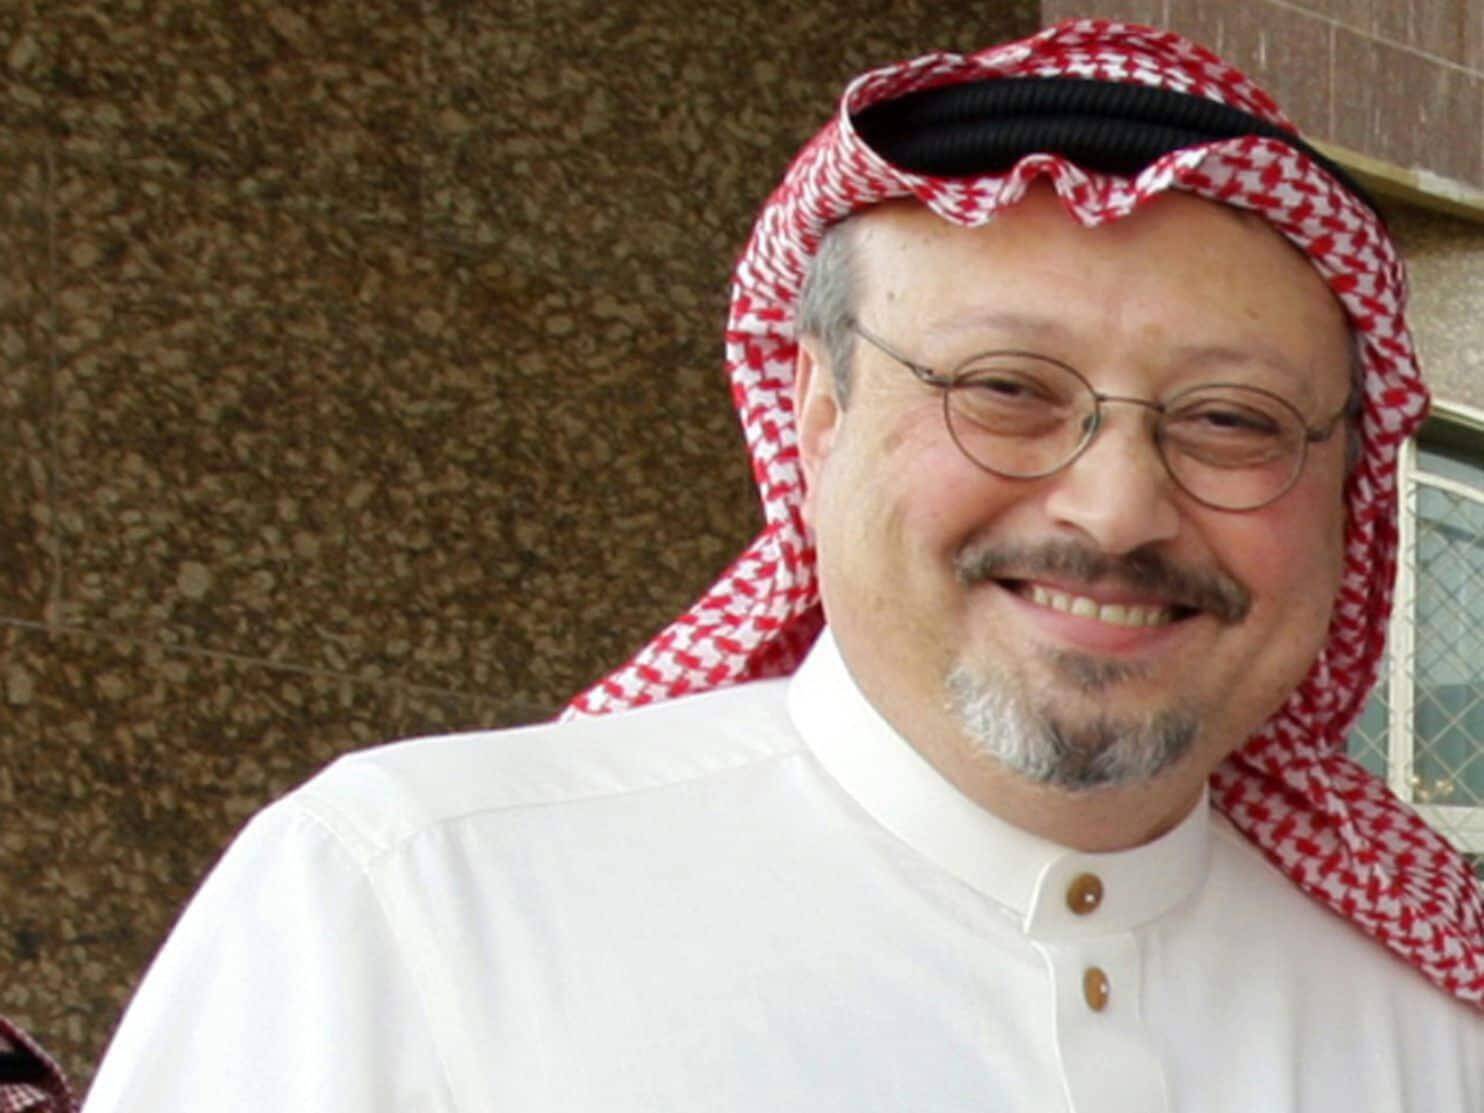 Τραμπ: Έσωσα το τομάρι του πρίγκιπα της Σ. Αραβίας στην υπόθεση Κασόγκι